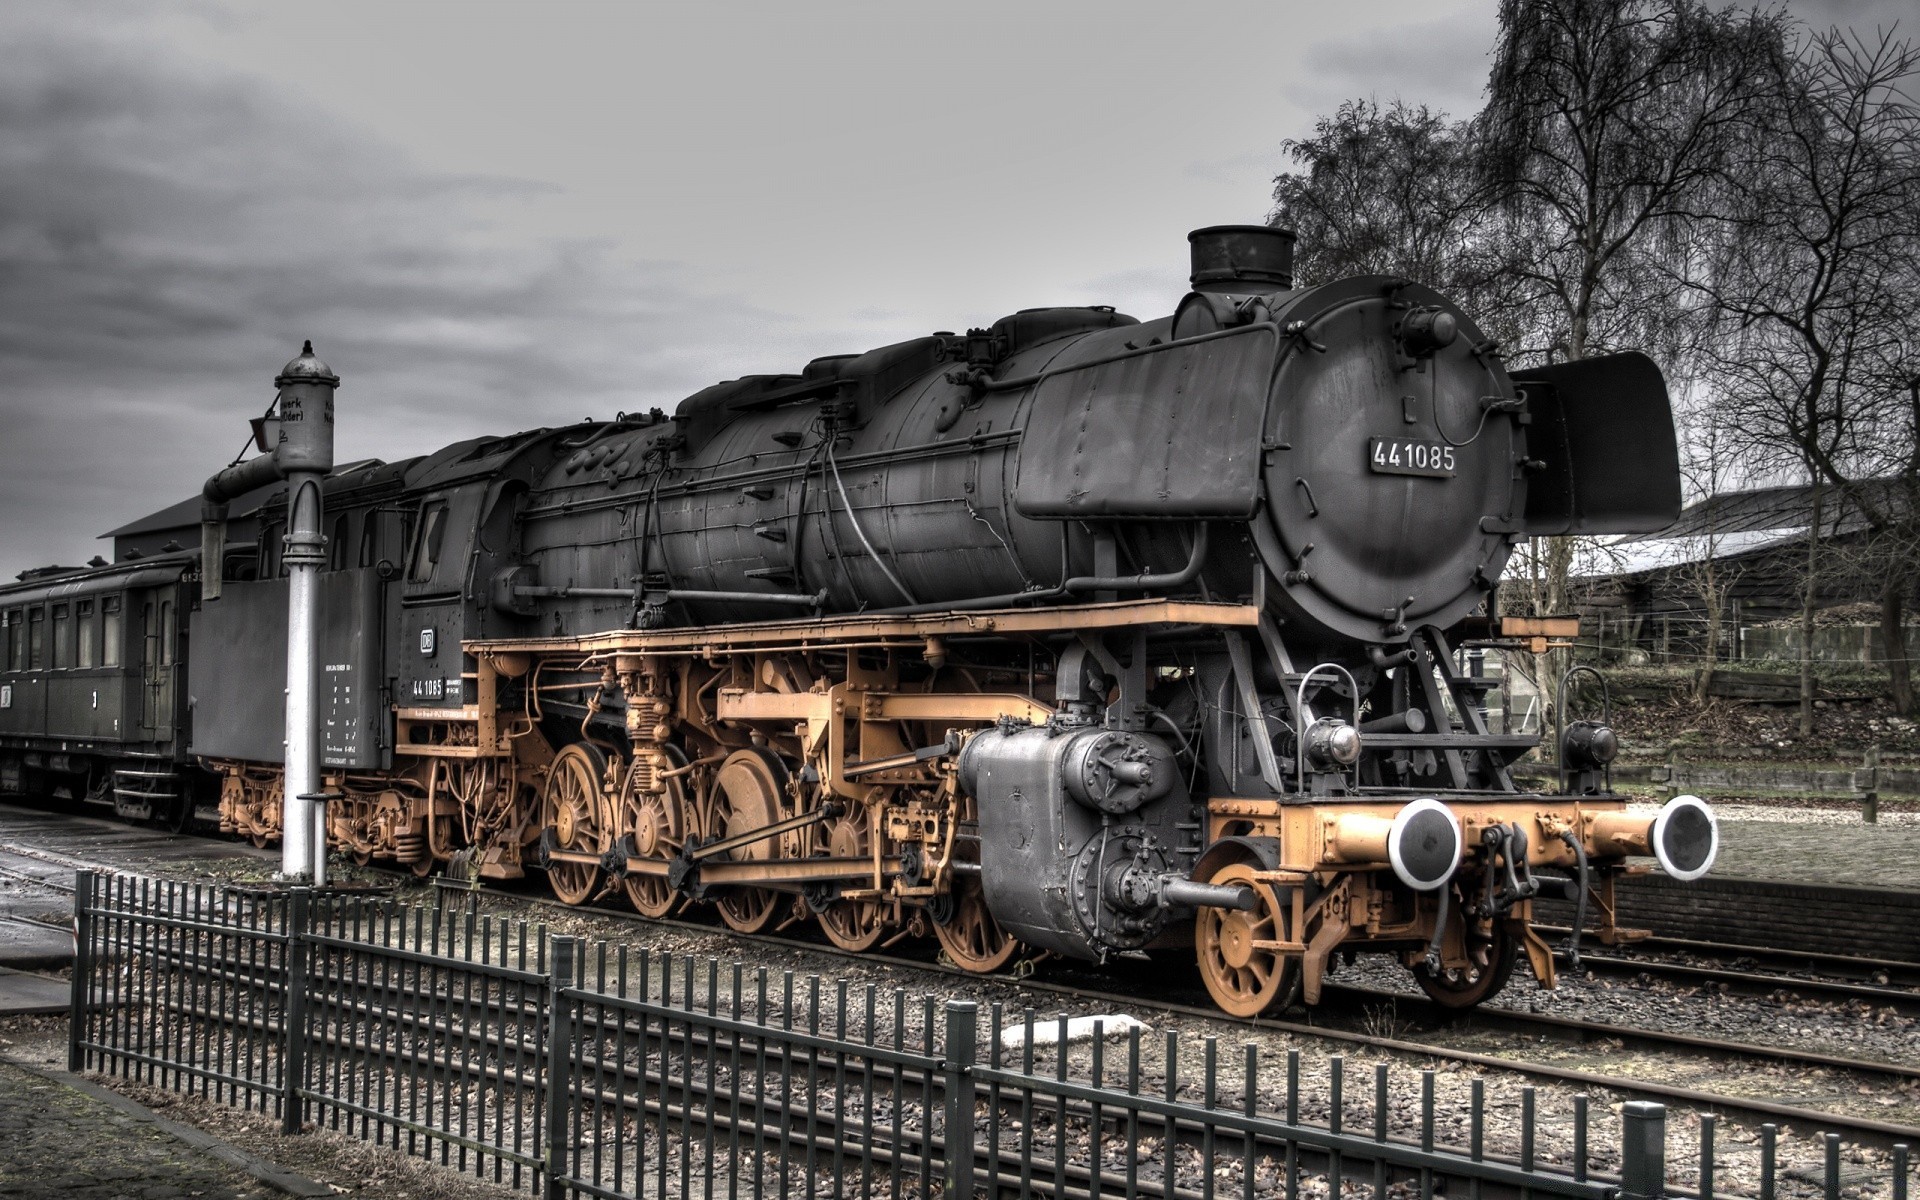 поезда поезд железнодорожный двигатель транспортная система пара винтаж трек вагон уголь путешествия автомобиль старый перевозки ностальгия станция сталь промышленность